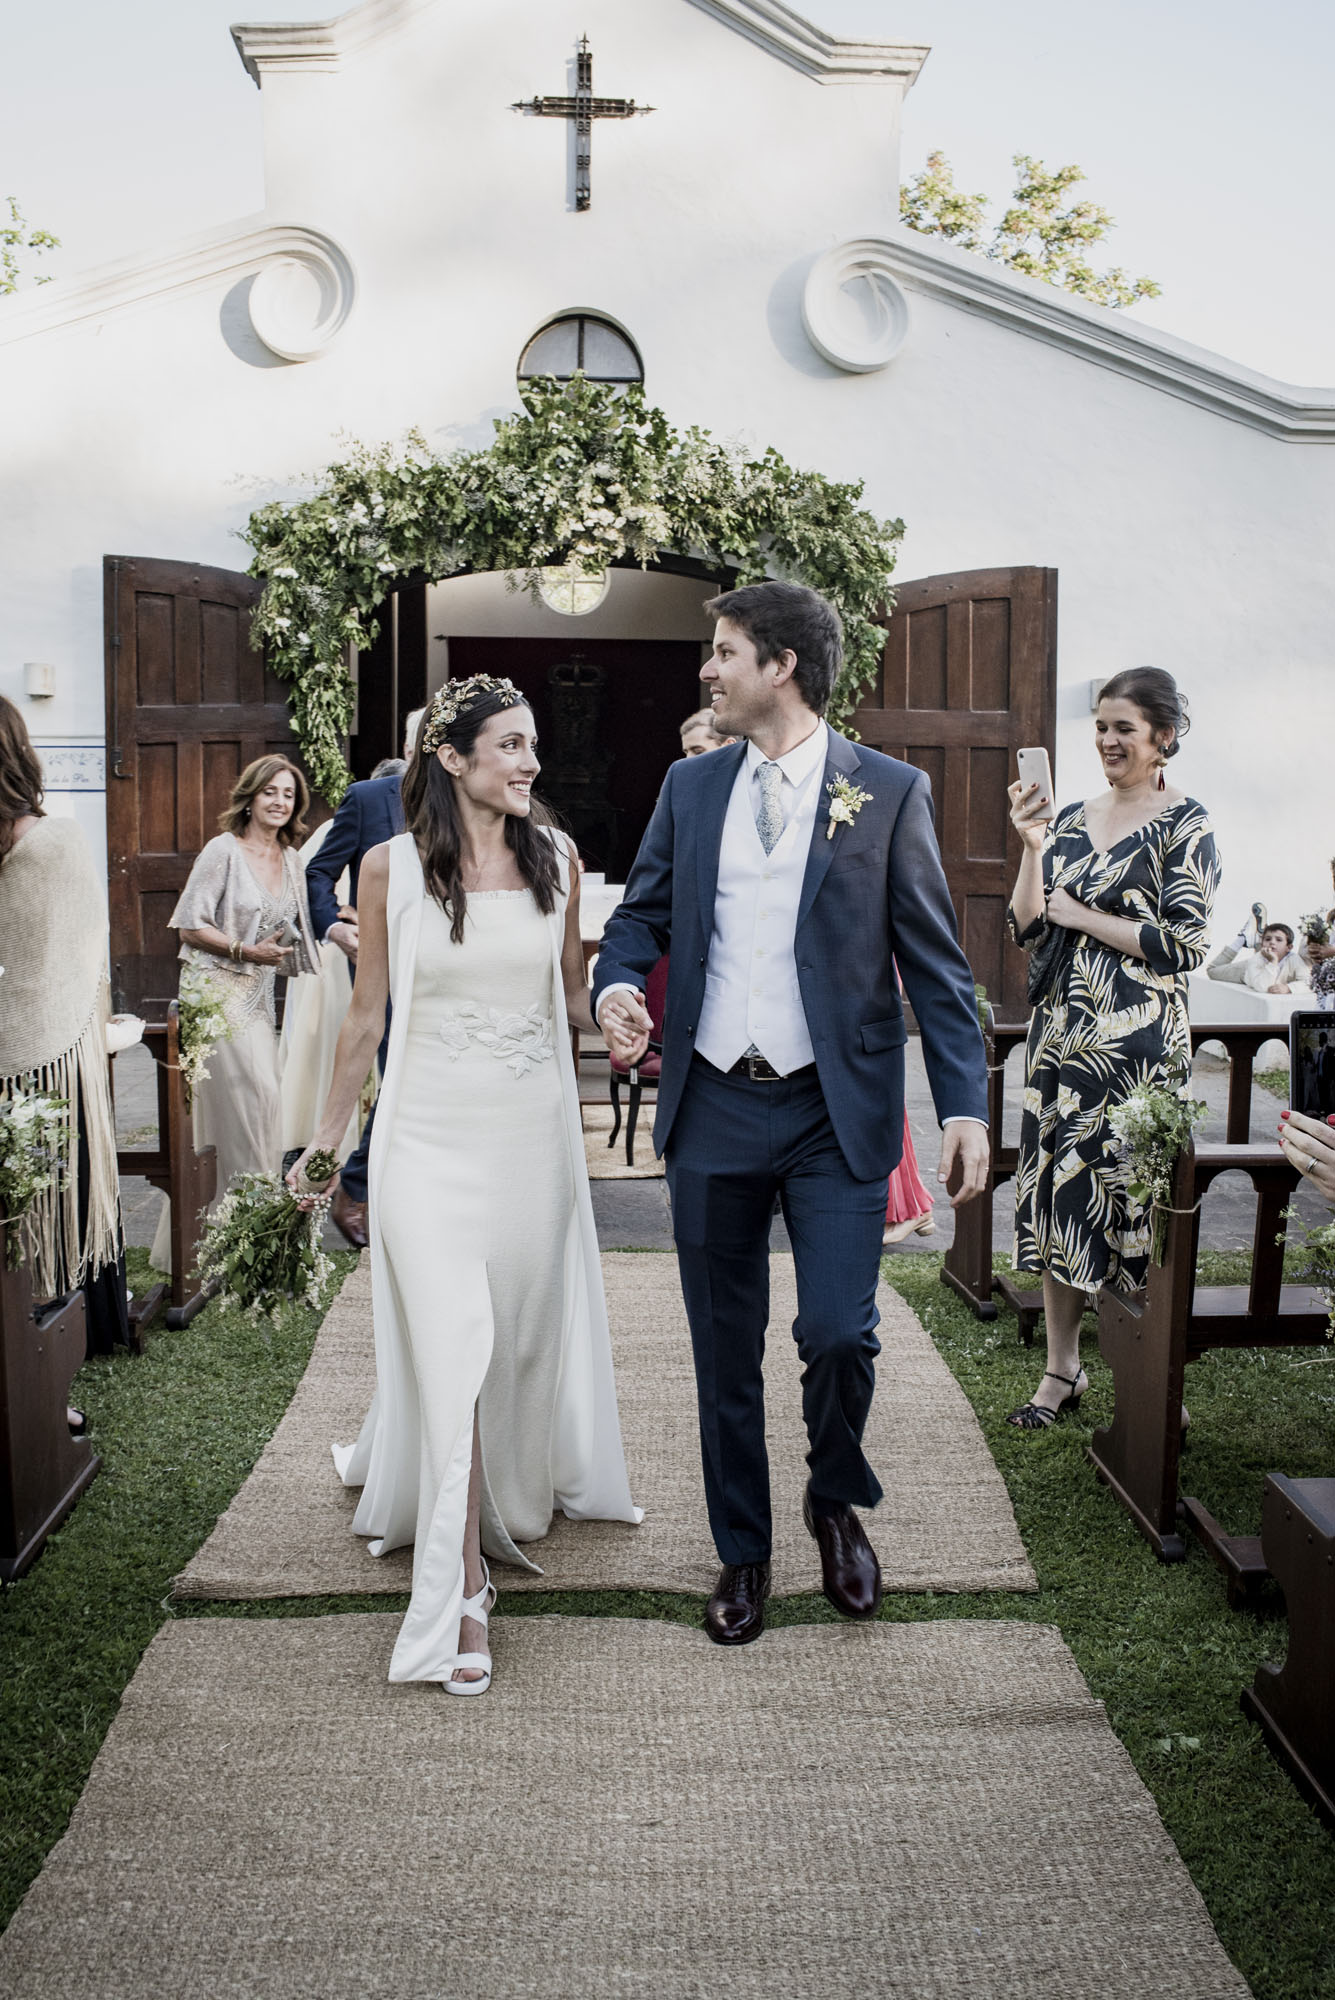 Un casamiento en una estancia argentina